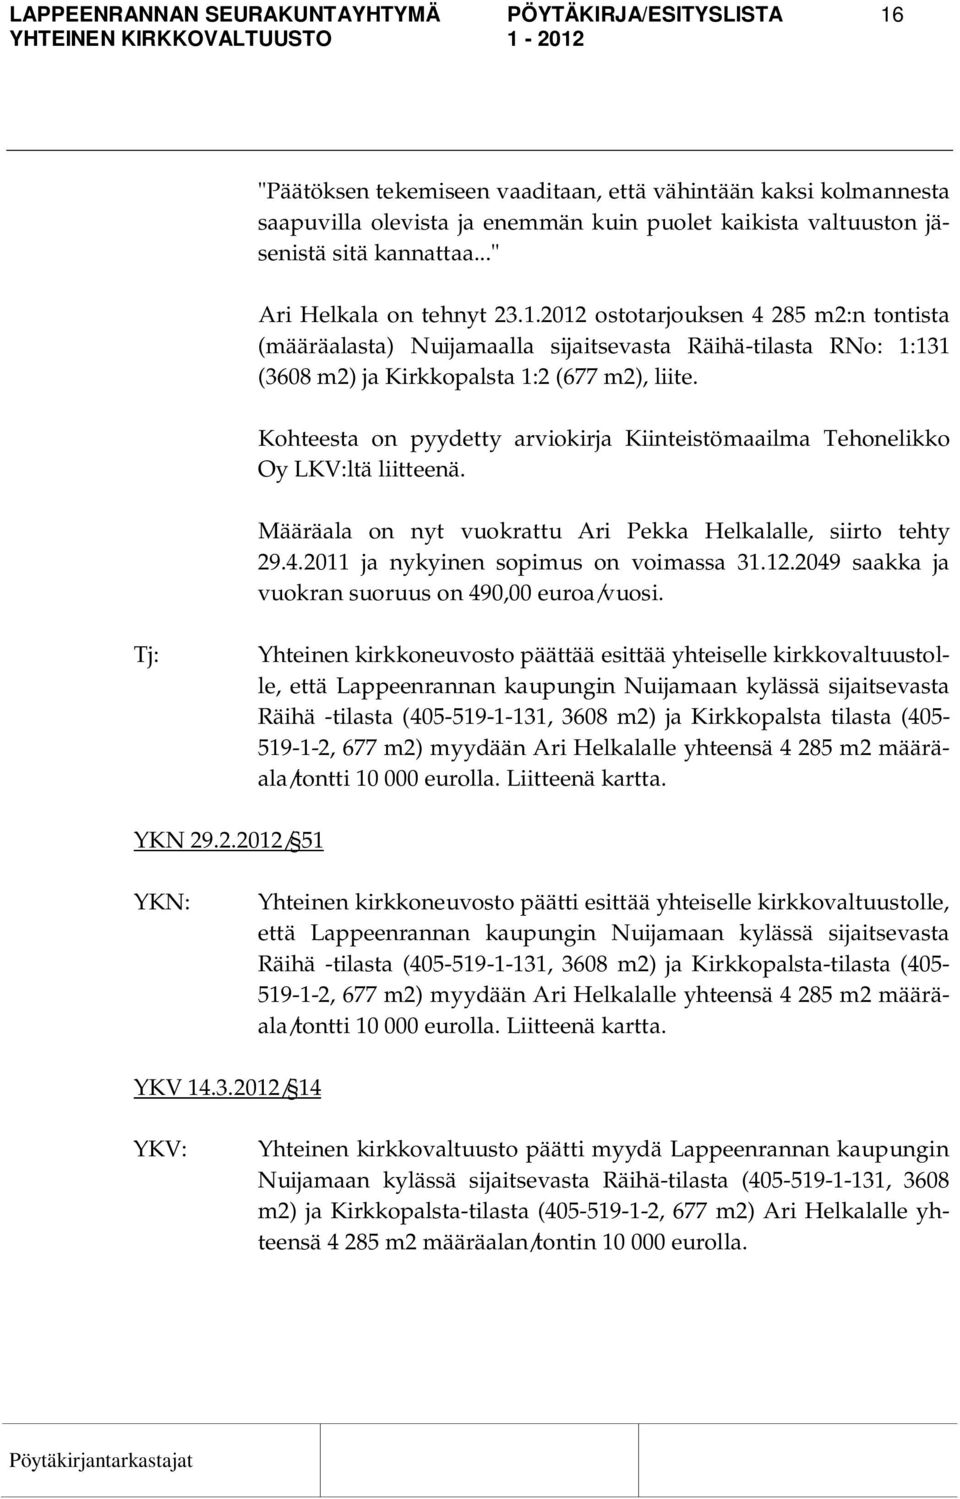 Kohteesta on pyydetty arviokirja Kiinteistömaailma Tehonelikko Oy LKV:ltä liitteenä. Määräala on nyt vuokrattu Ari Pekka Helkalalle, siirto tehty 29.4.2011 ja nykyinen sopimus on voimassa 31.12.